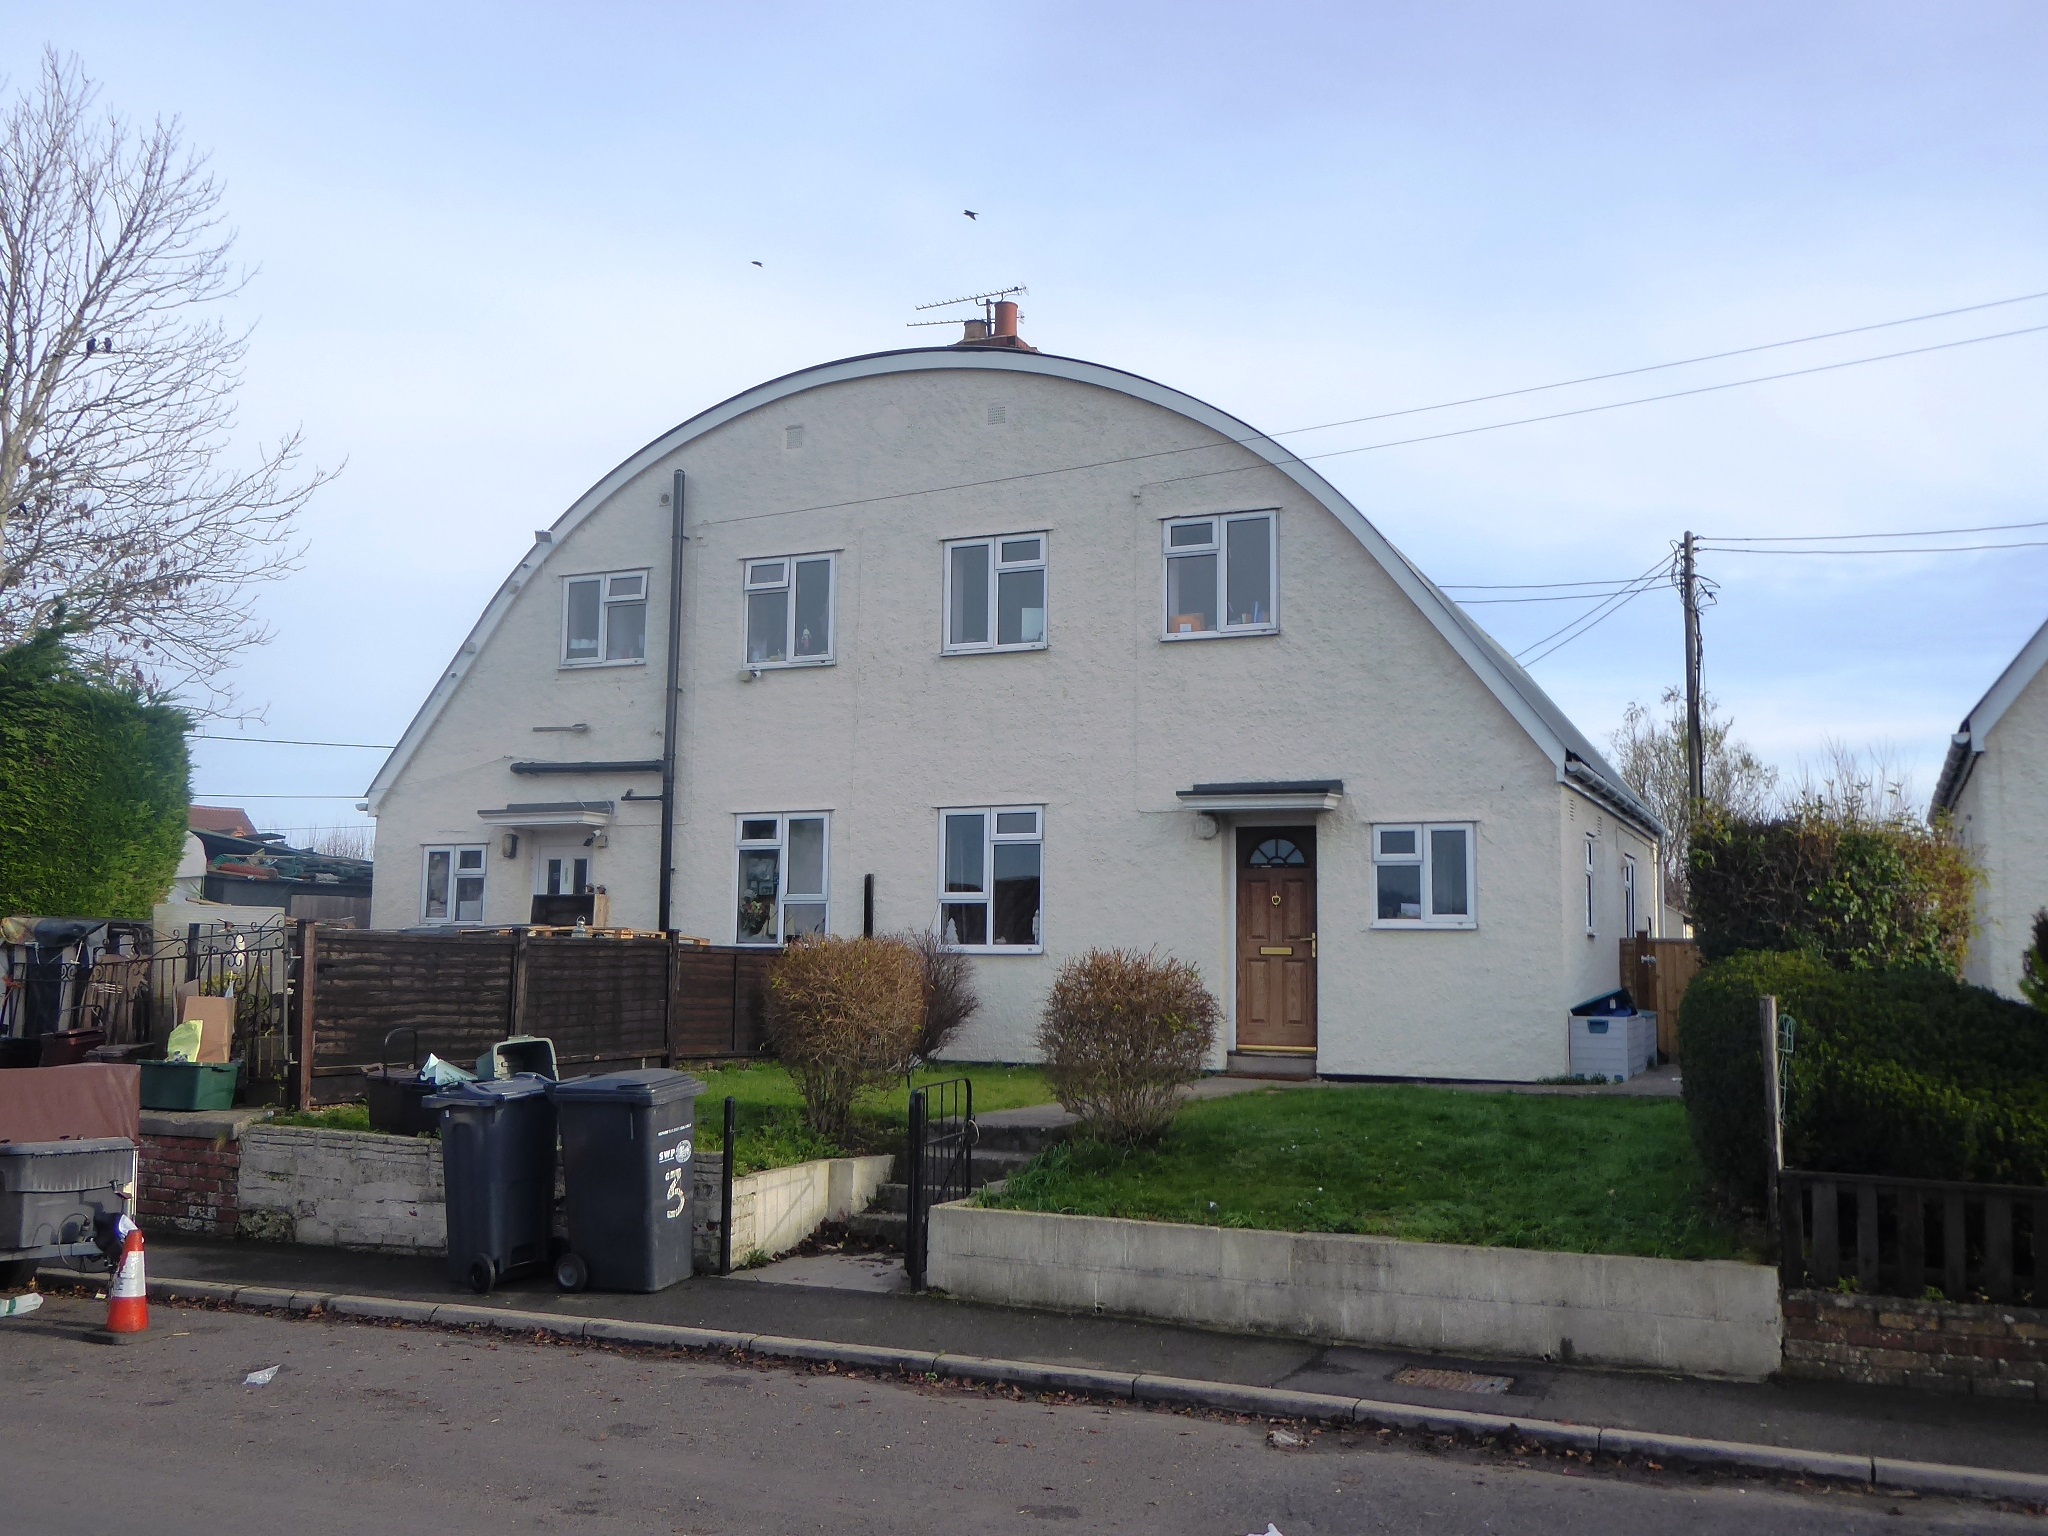 Nissen-Petren house, Fairhouse Road, Barwick